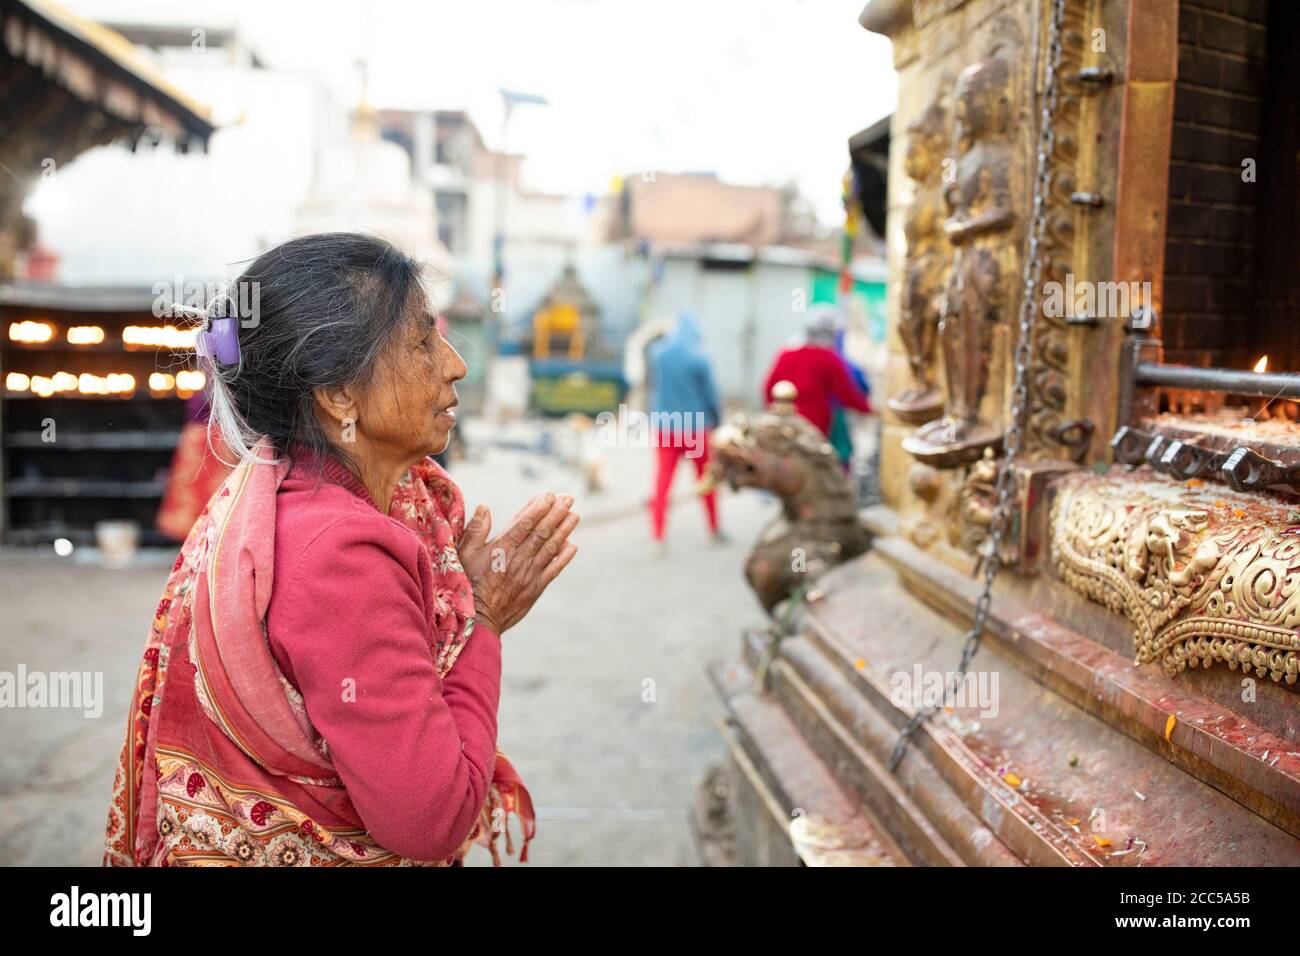 Woman praying with folded hands at a shrine at Swayambhunath stupa in Kathmandu, Nepal. Stock Photo